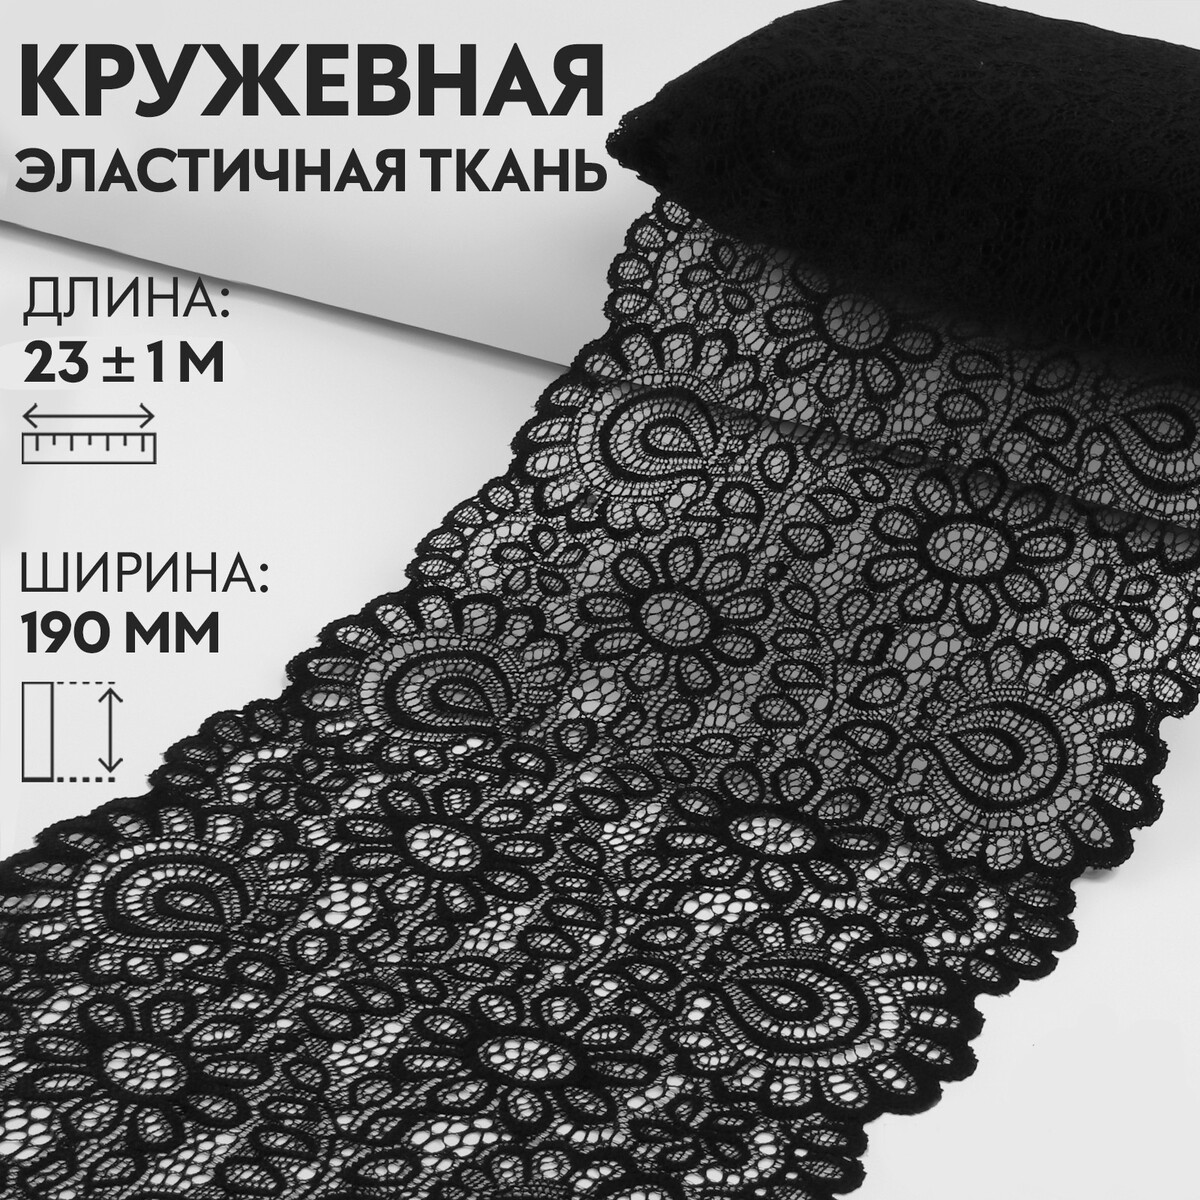 Кружевная эластичная ткань, 190 мм × 23 ± 1 м, цвет черный